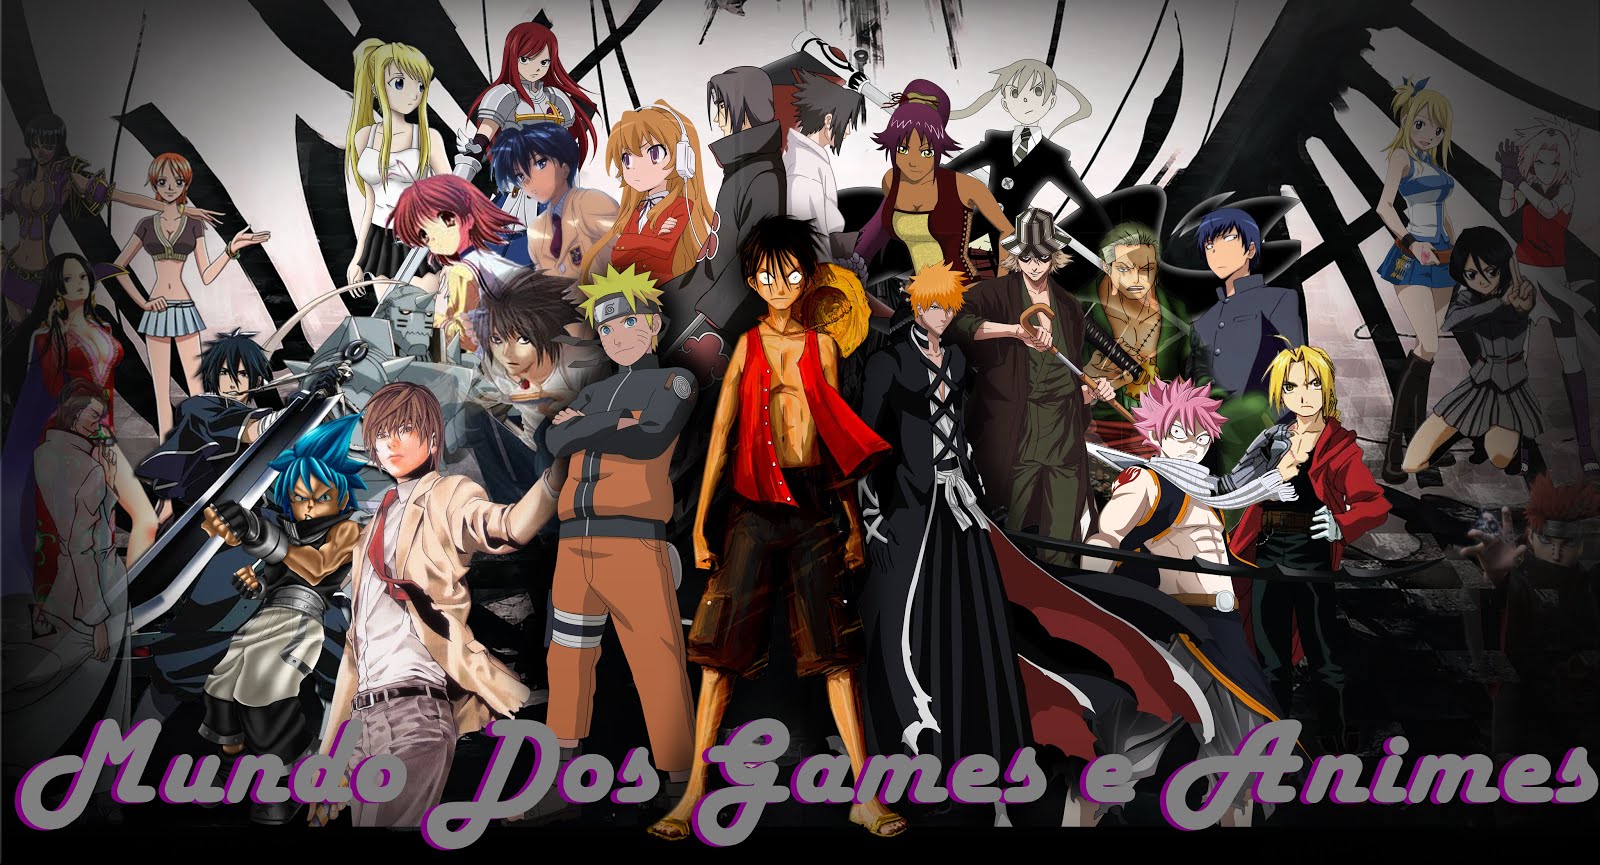 Mundo Dos Animes e Games